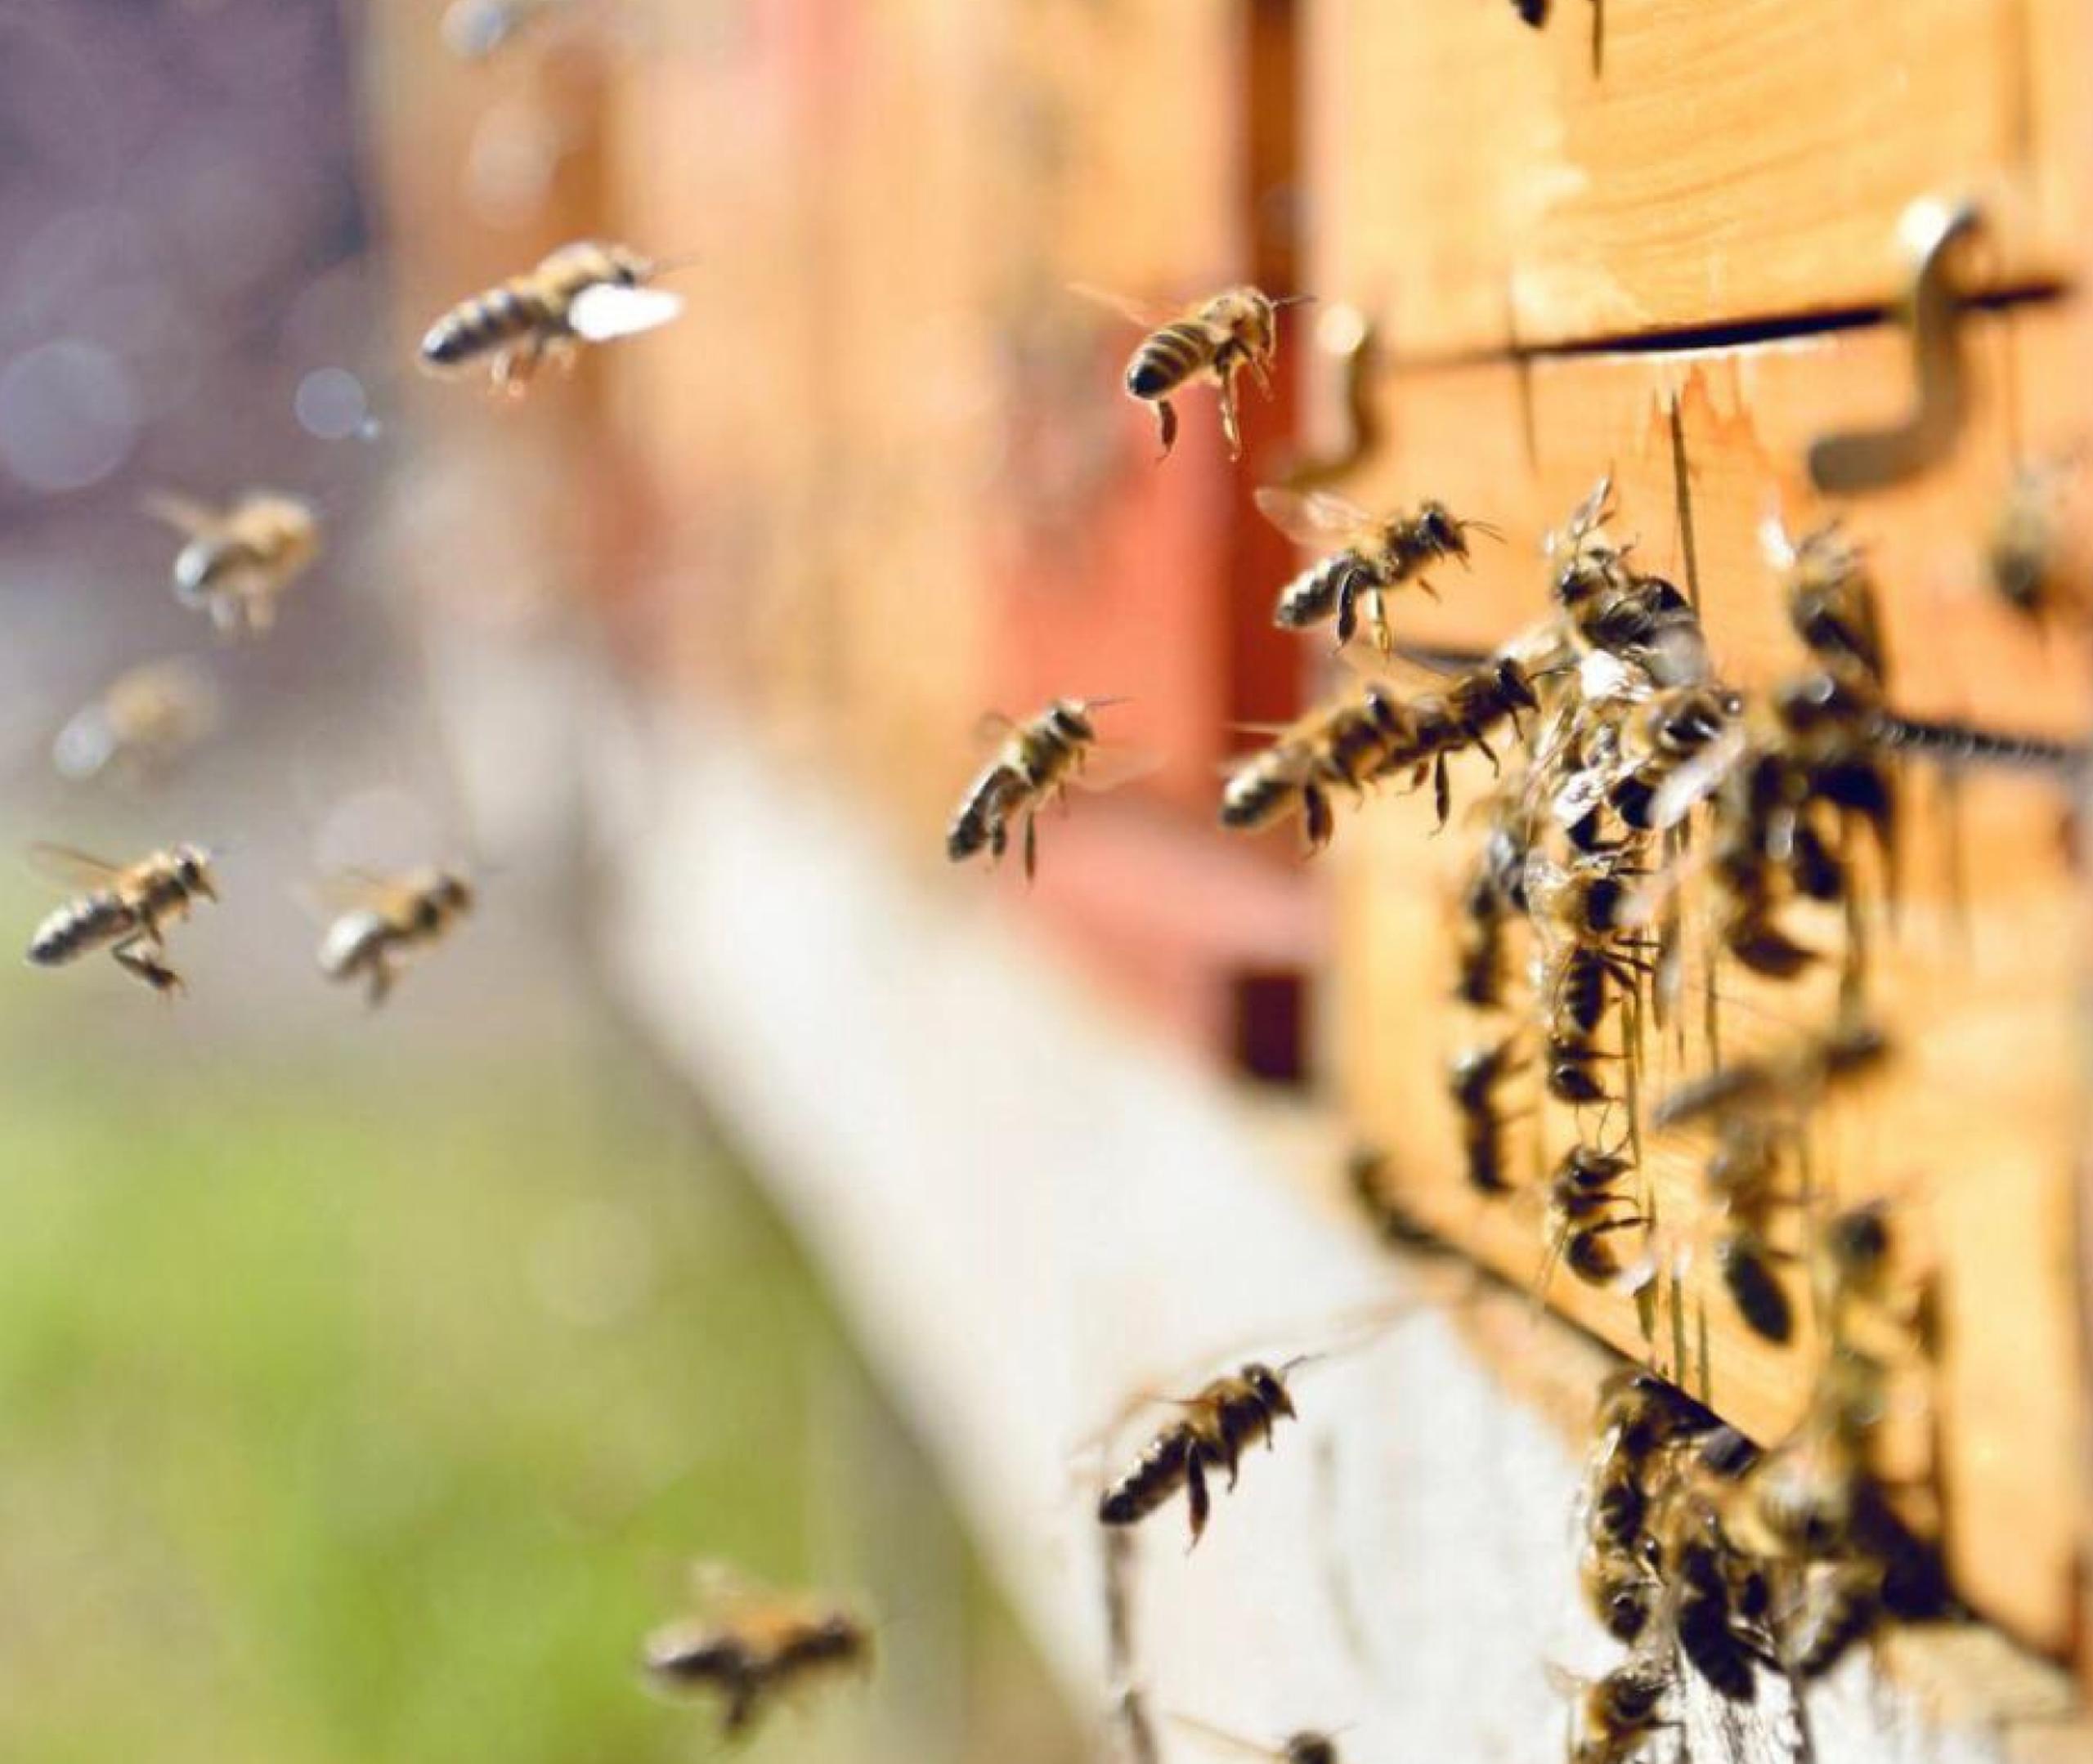 En 2021, los apicultores del estado reportaron una pérdida de 41% de sus poblaciones, menos del promedio nacional de 45.5% de abejas entre abril del 2020 y el 2021.